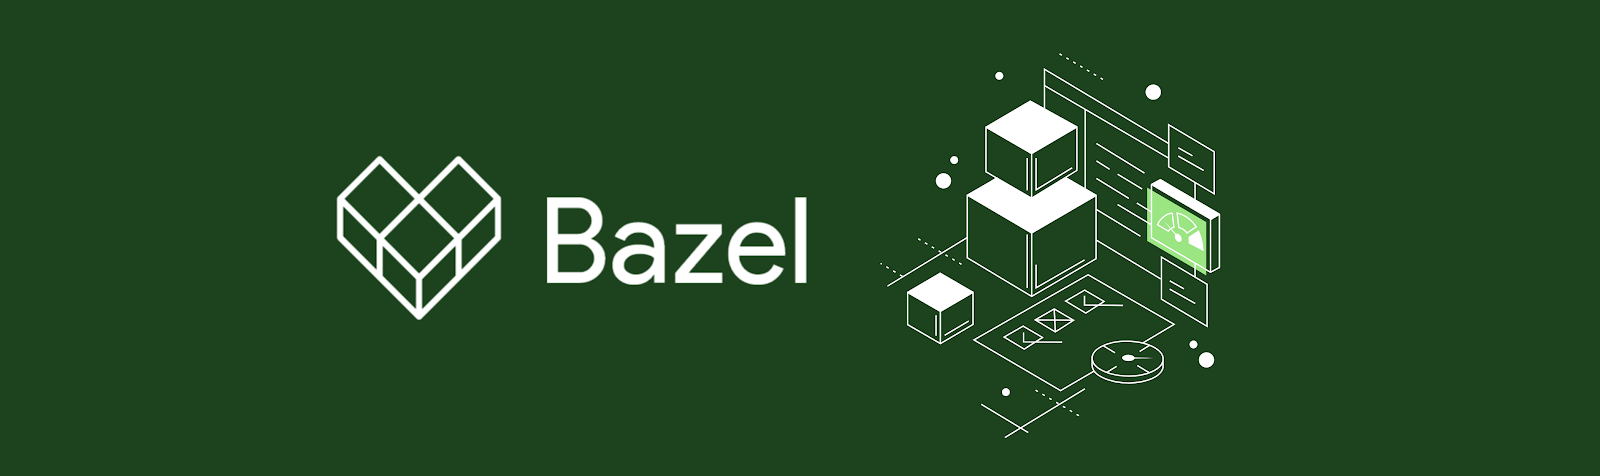 Bazel Banner